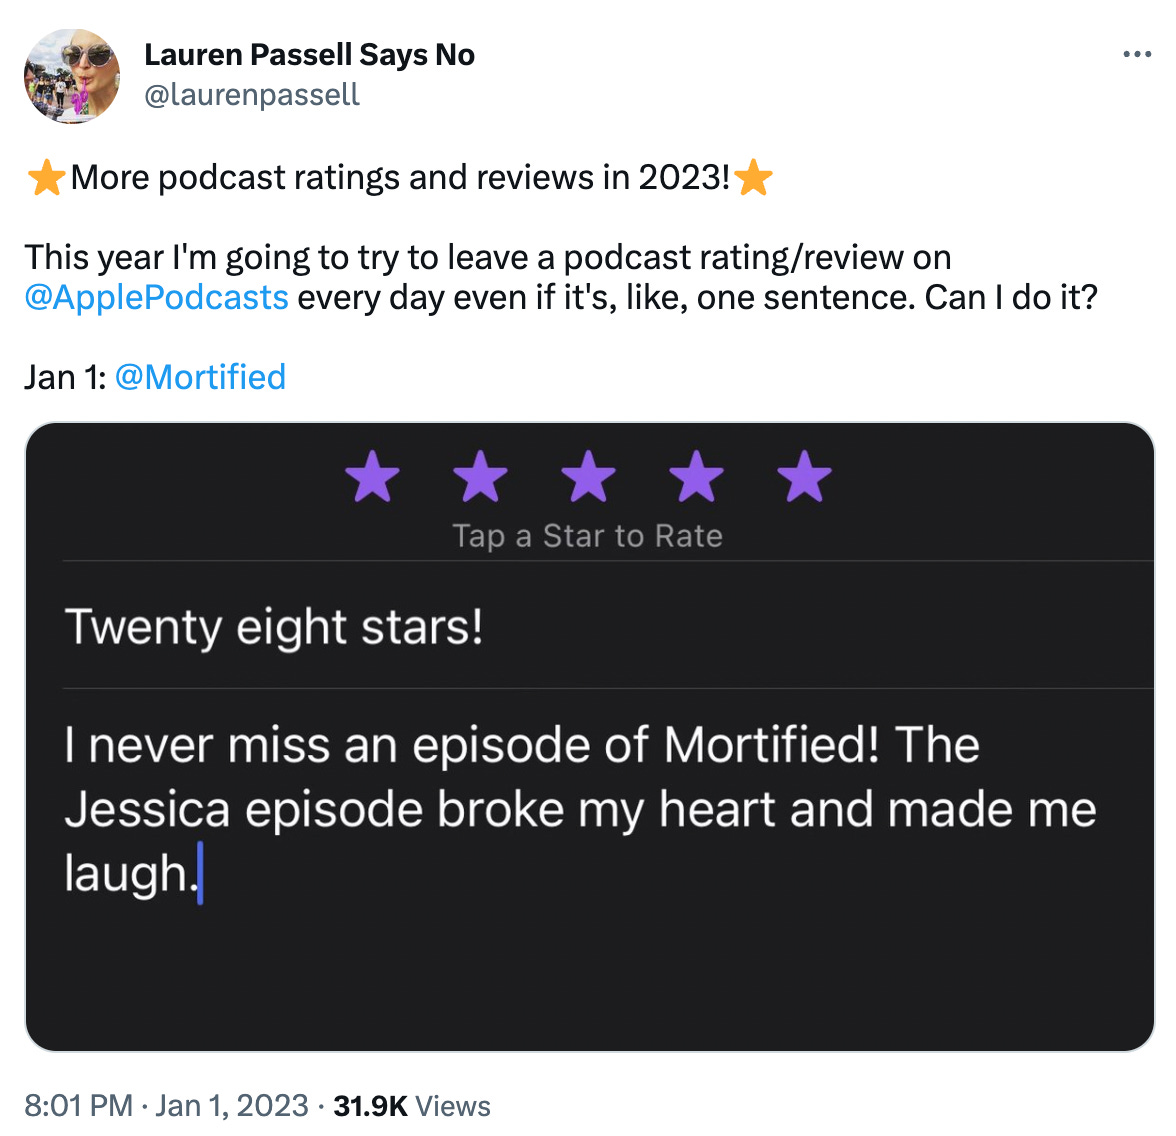 Tweet from Lauren encouraging more podcast reviews in 2023